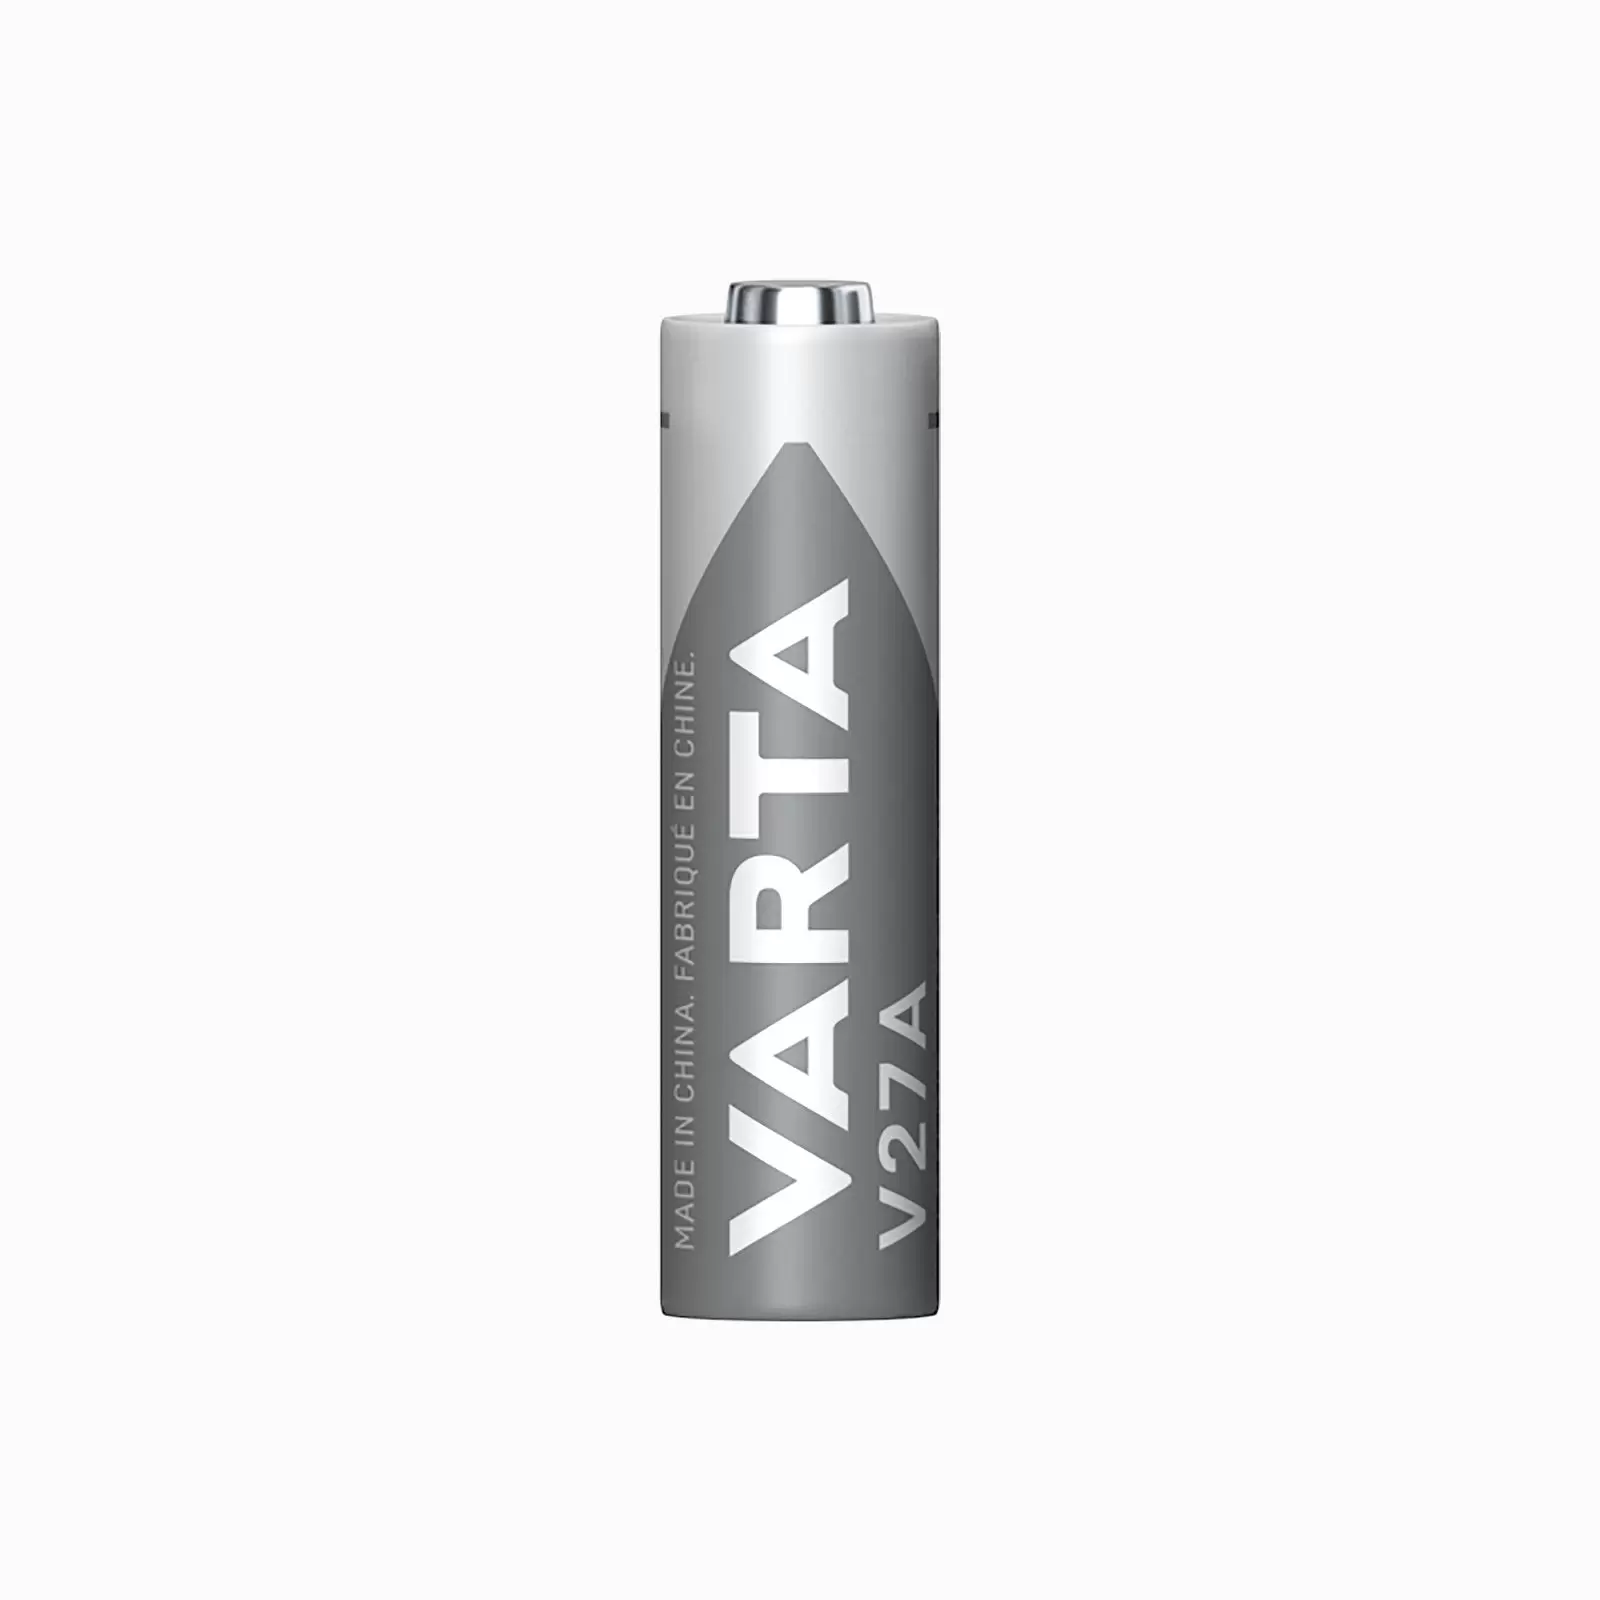 Varta Batterie Alkaline LR27 V27A V27GA 12V 1er Blister